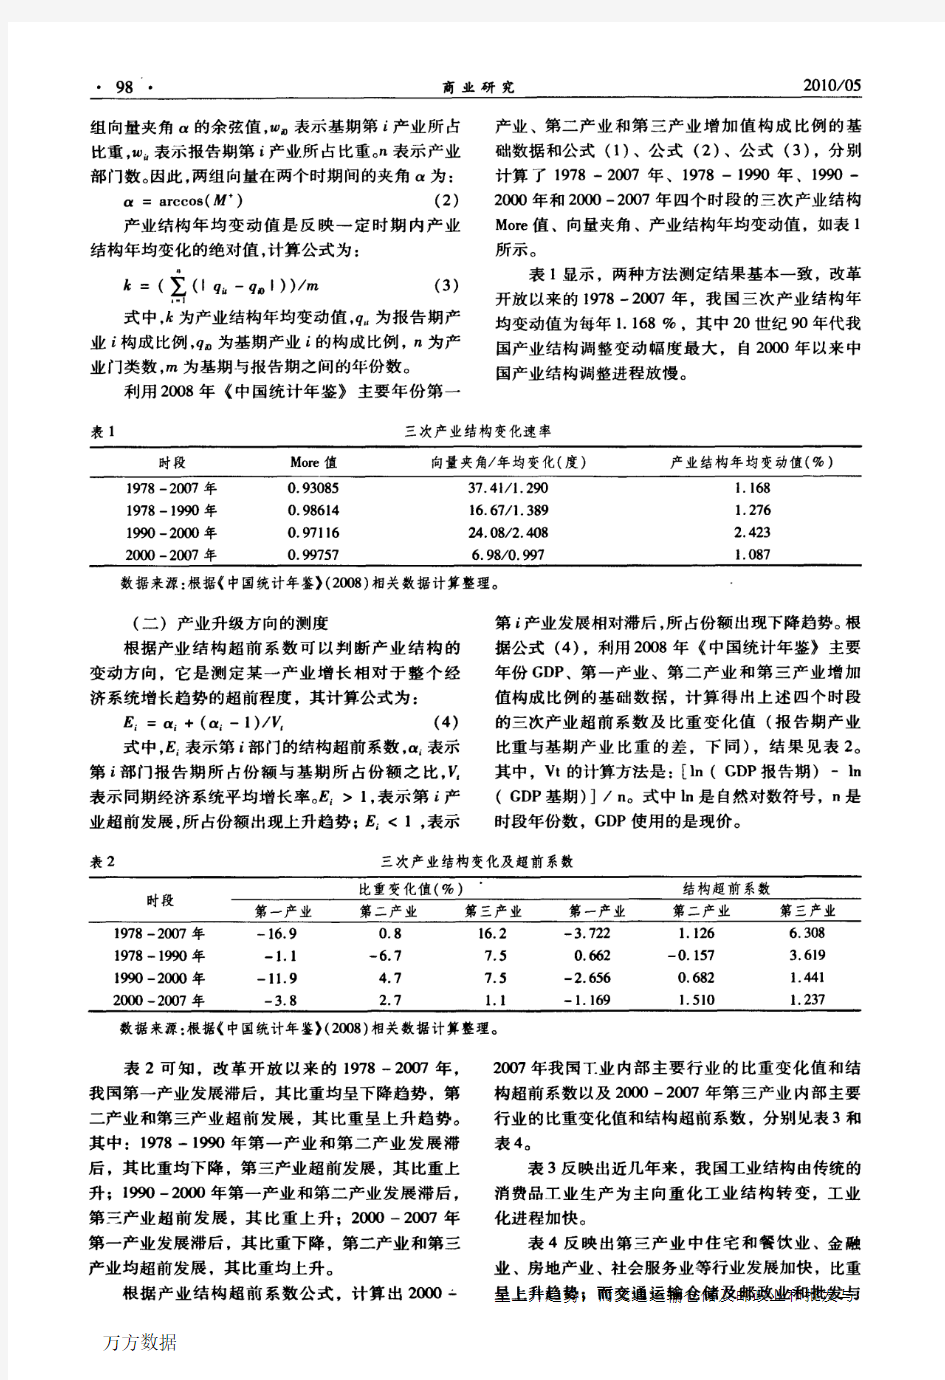 中国产业升级测度与策略分析